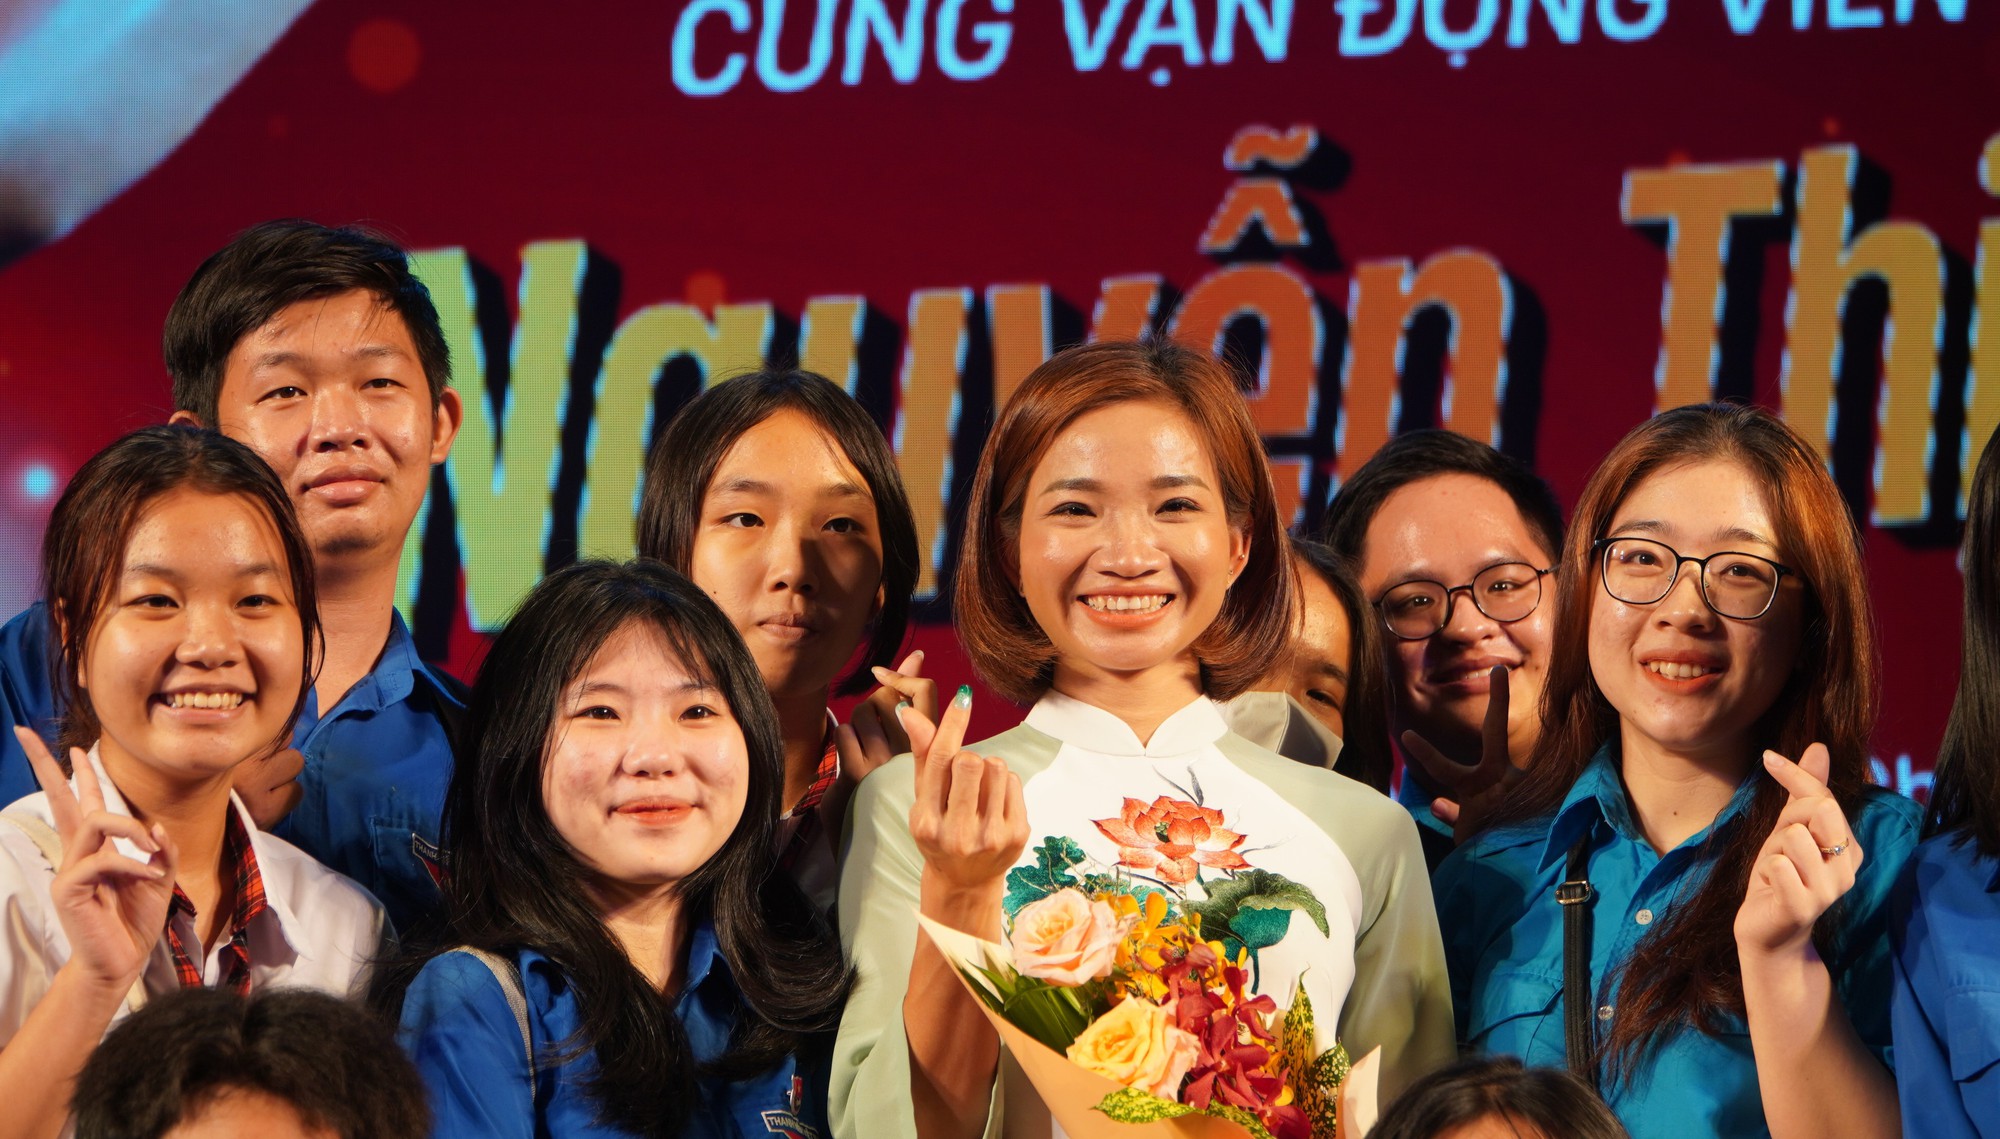 VĐV Nguyễn Thị Oanh: Không cô đơn trên hành trình của mình - Ảnh 7.